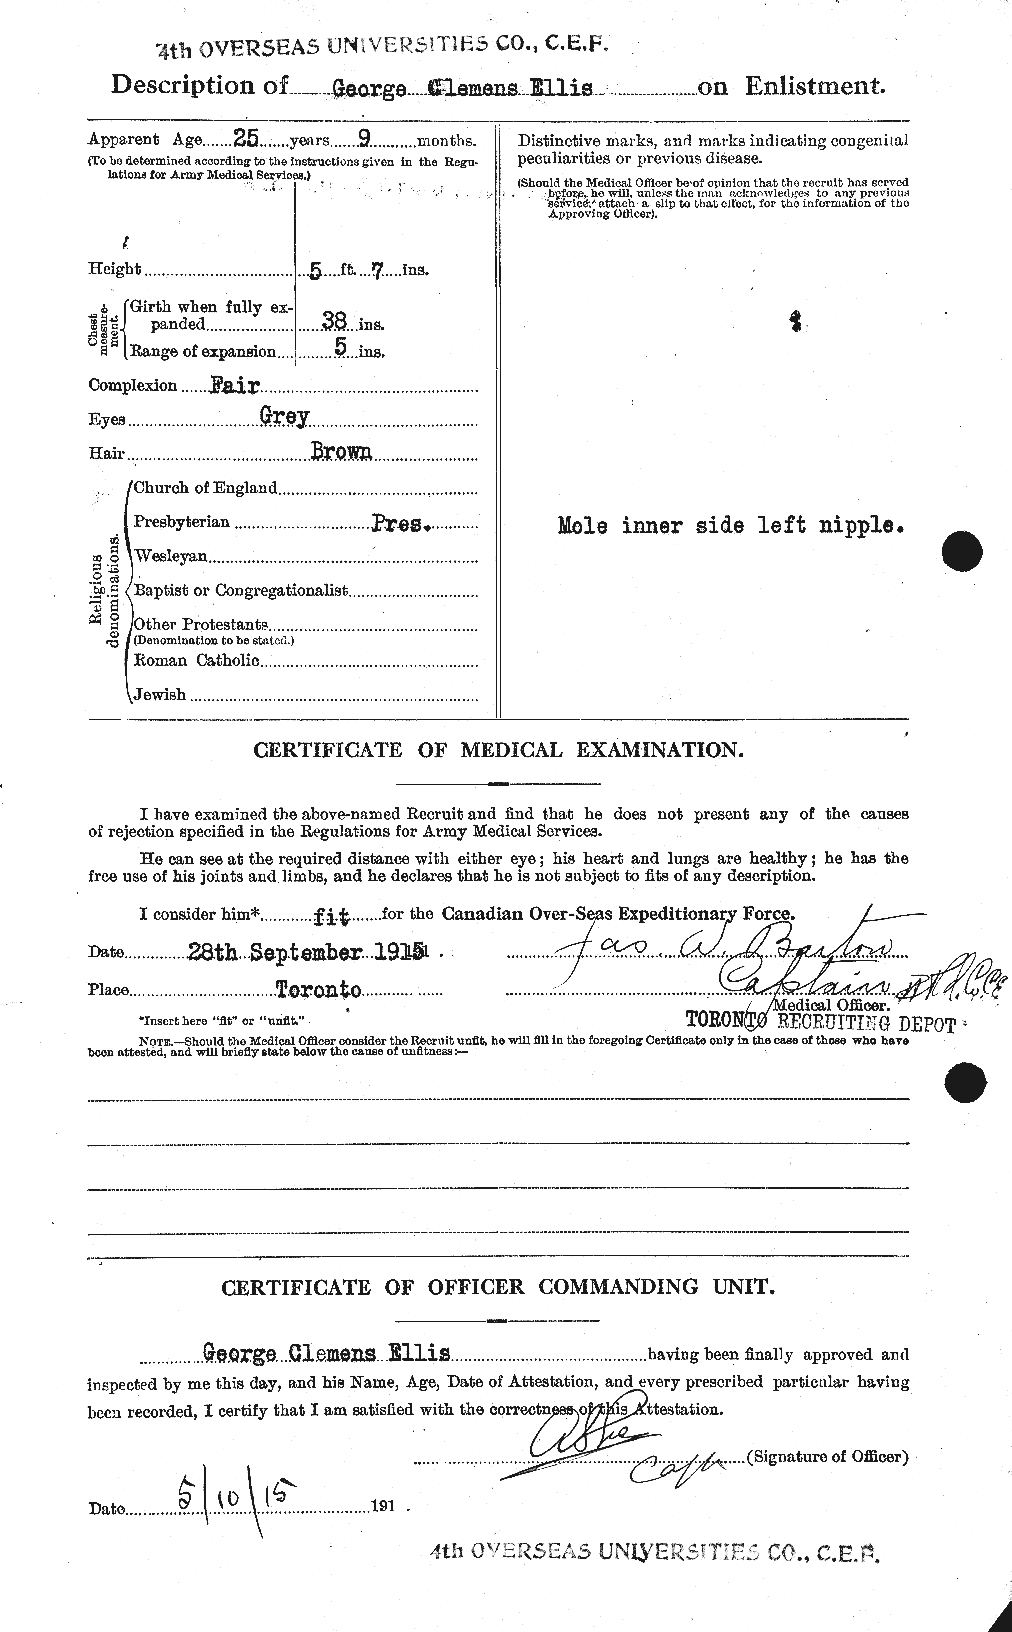 Dossiers du Personnel de la Première Guerre mondiale - CEC 311894b